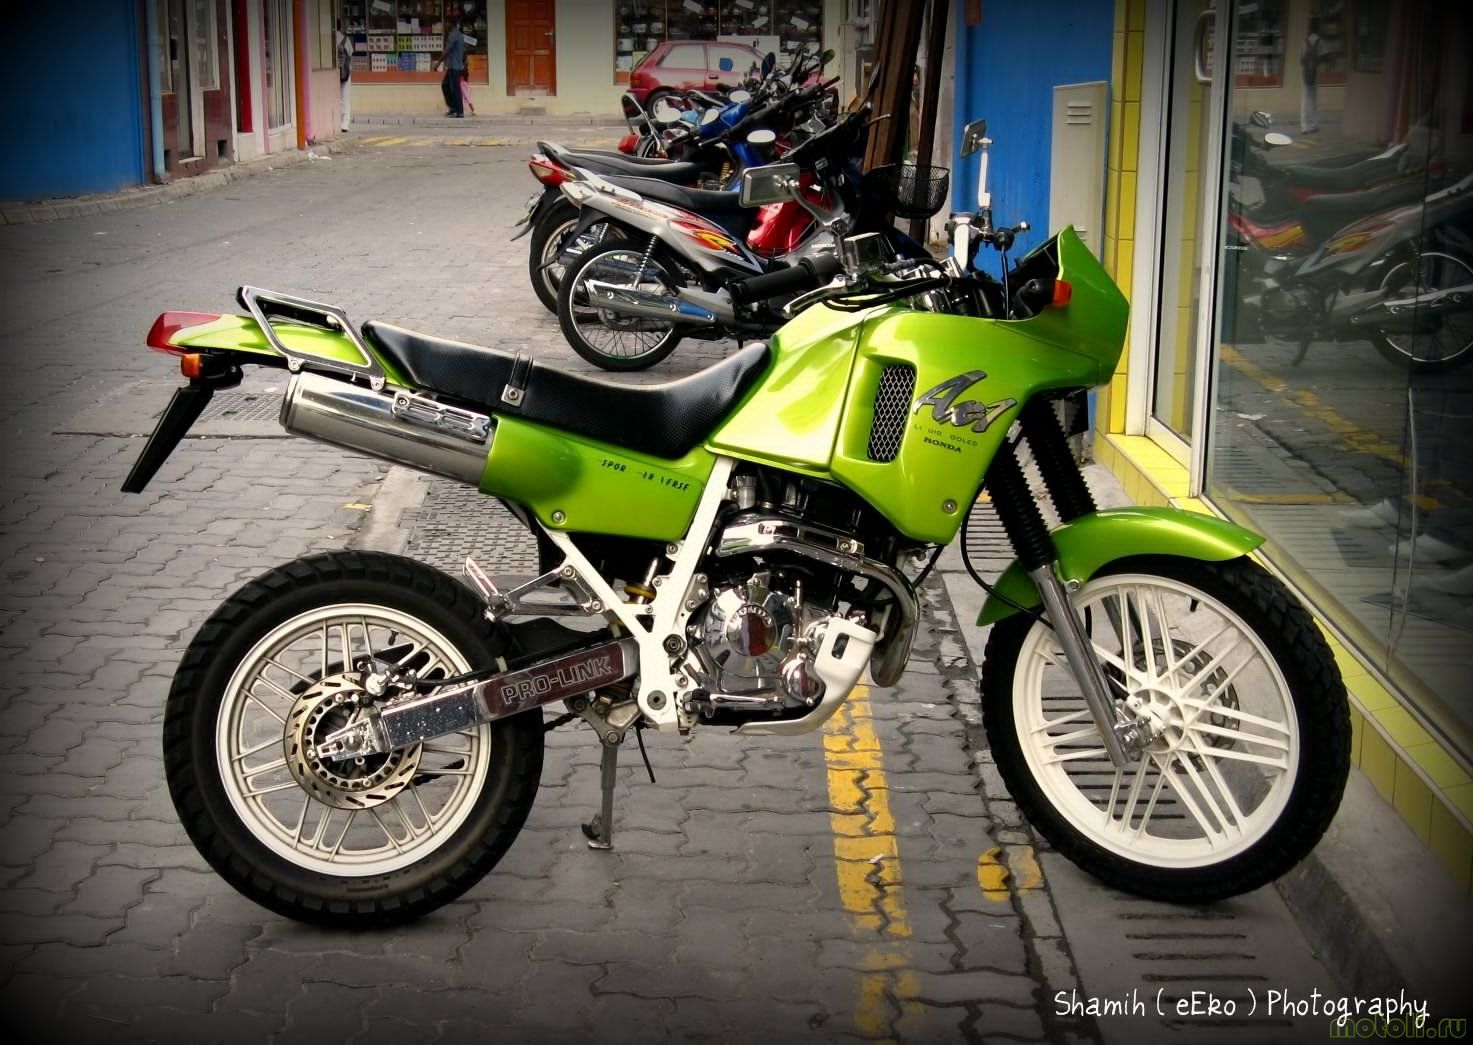 Honda ax-1 - очень надежный мотоцикл-«вседорожник»